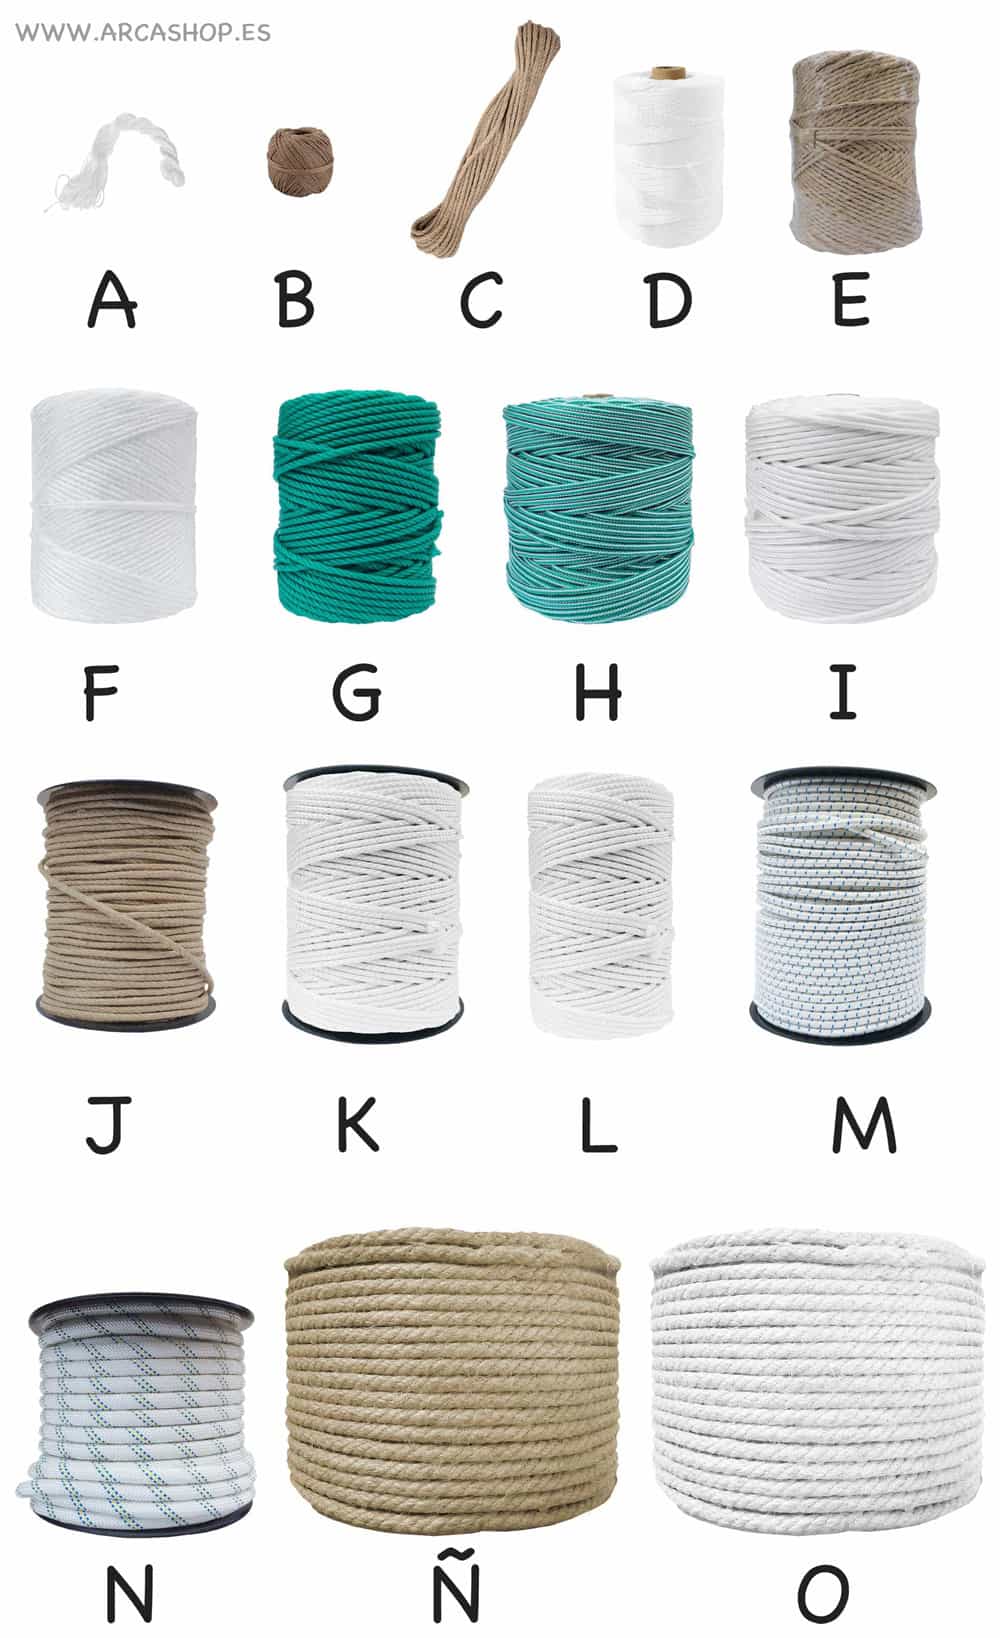 Tipos de cuerdas uso doméstico, decoración profesional, toldos, stor, persianas, pozos, juegos, manualidades, etc